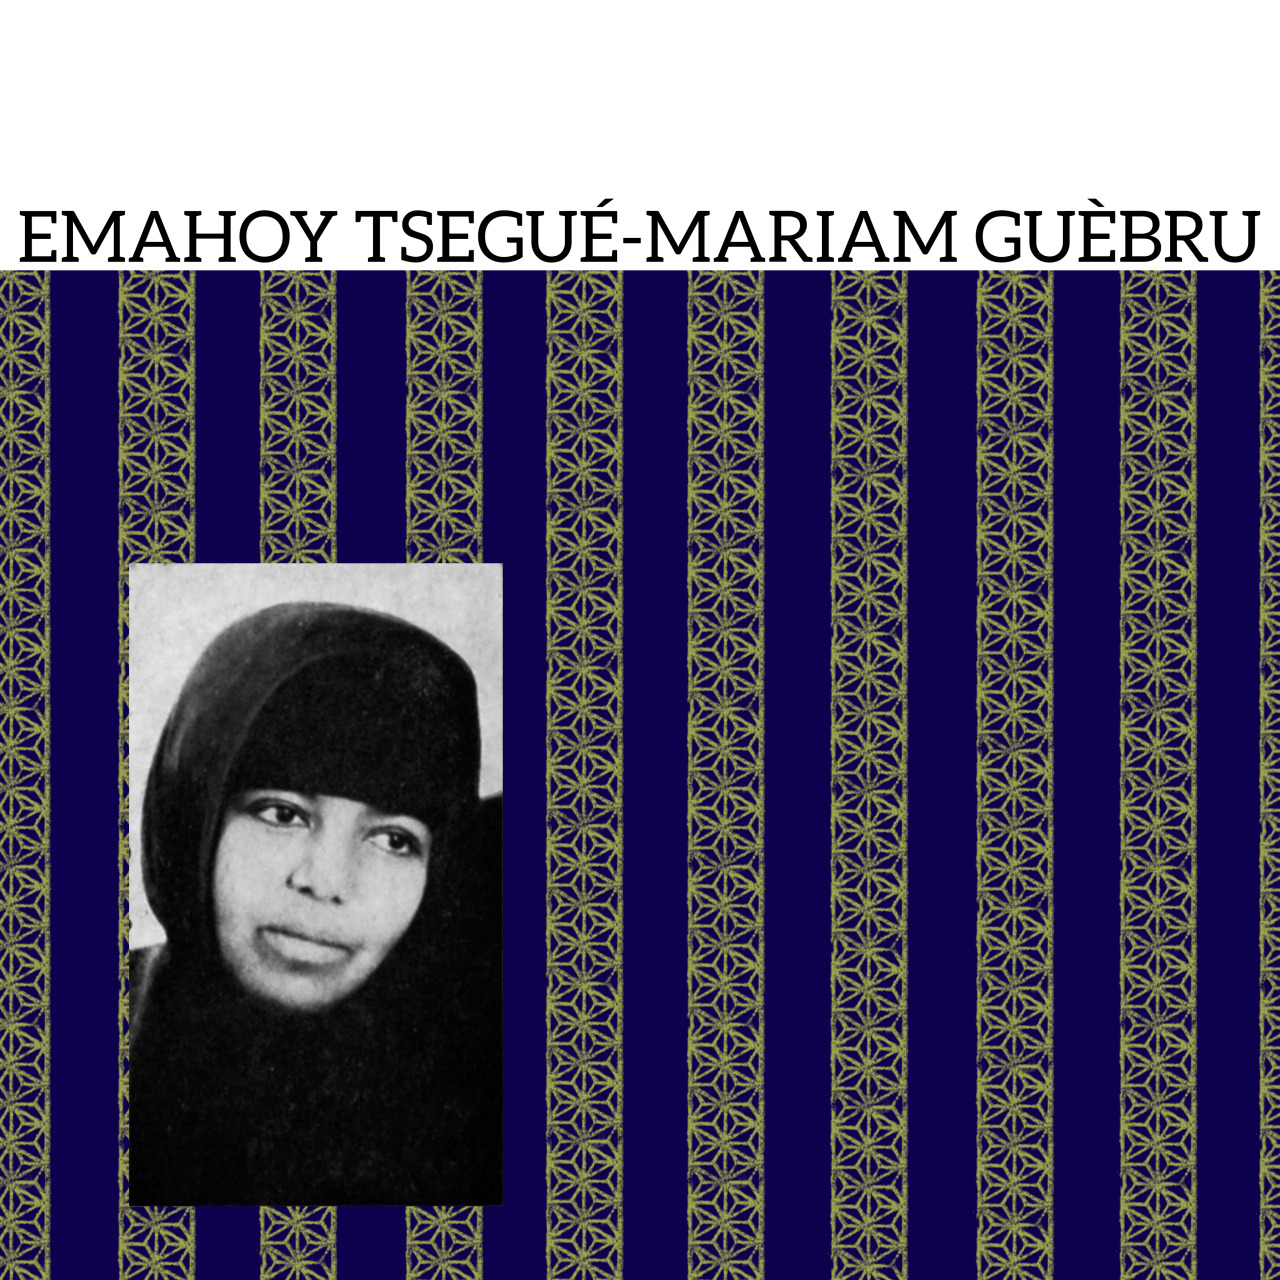 Сакральный одноименный альбом Эмахой Тцеге Мариам Гебру был впервые переиздан на виниле